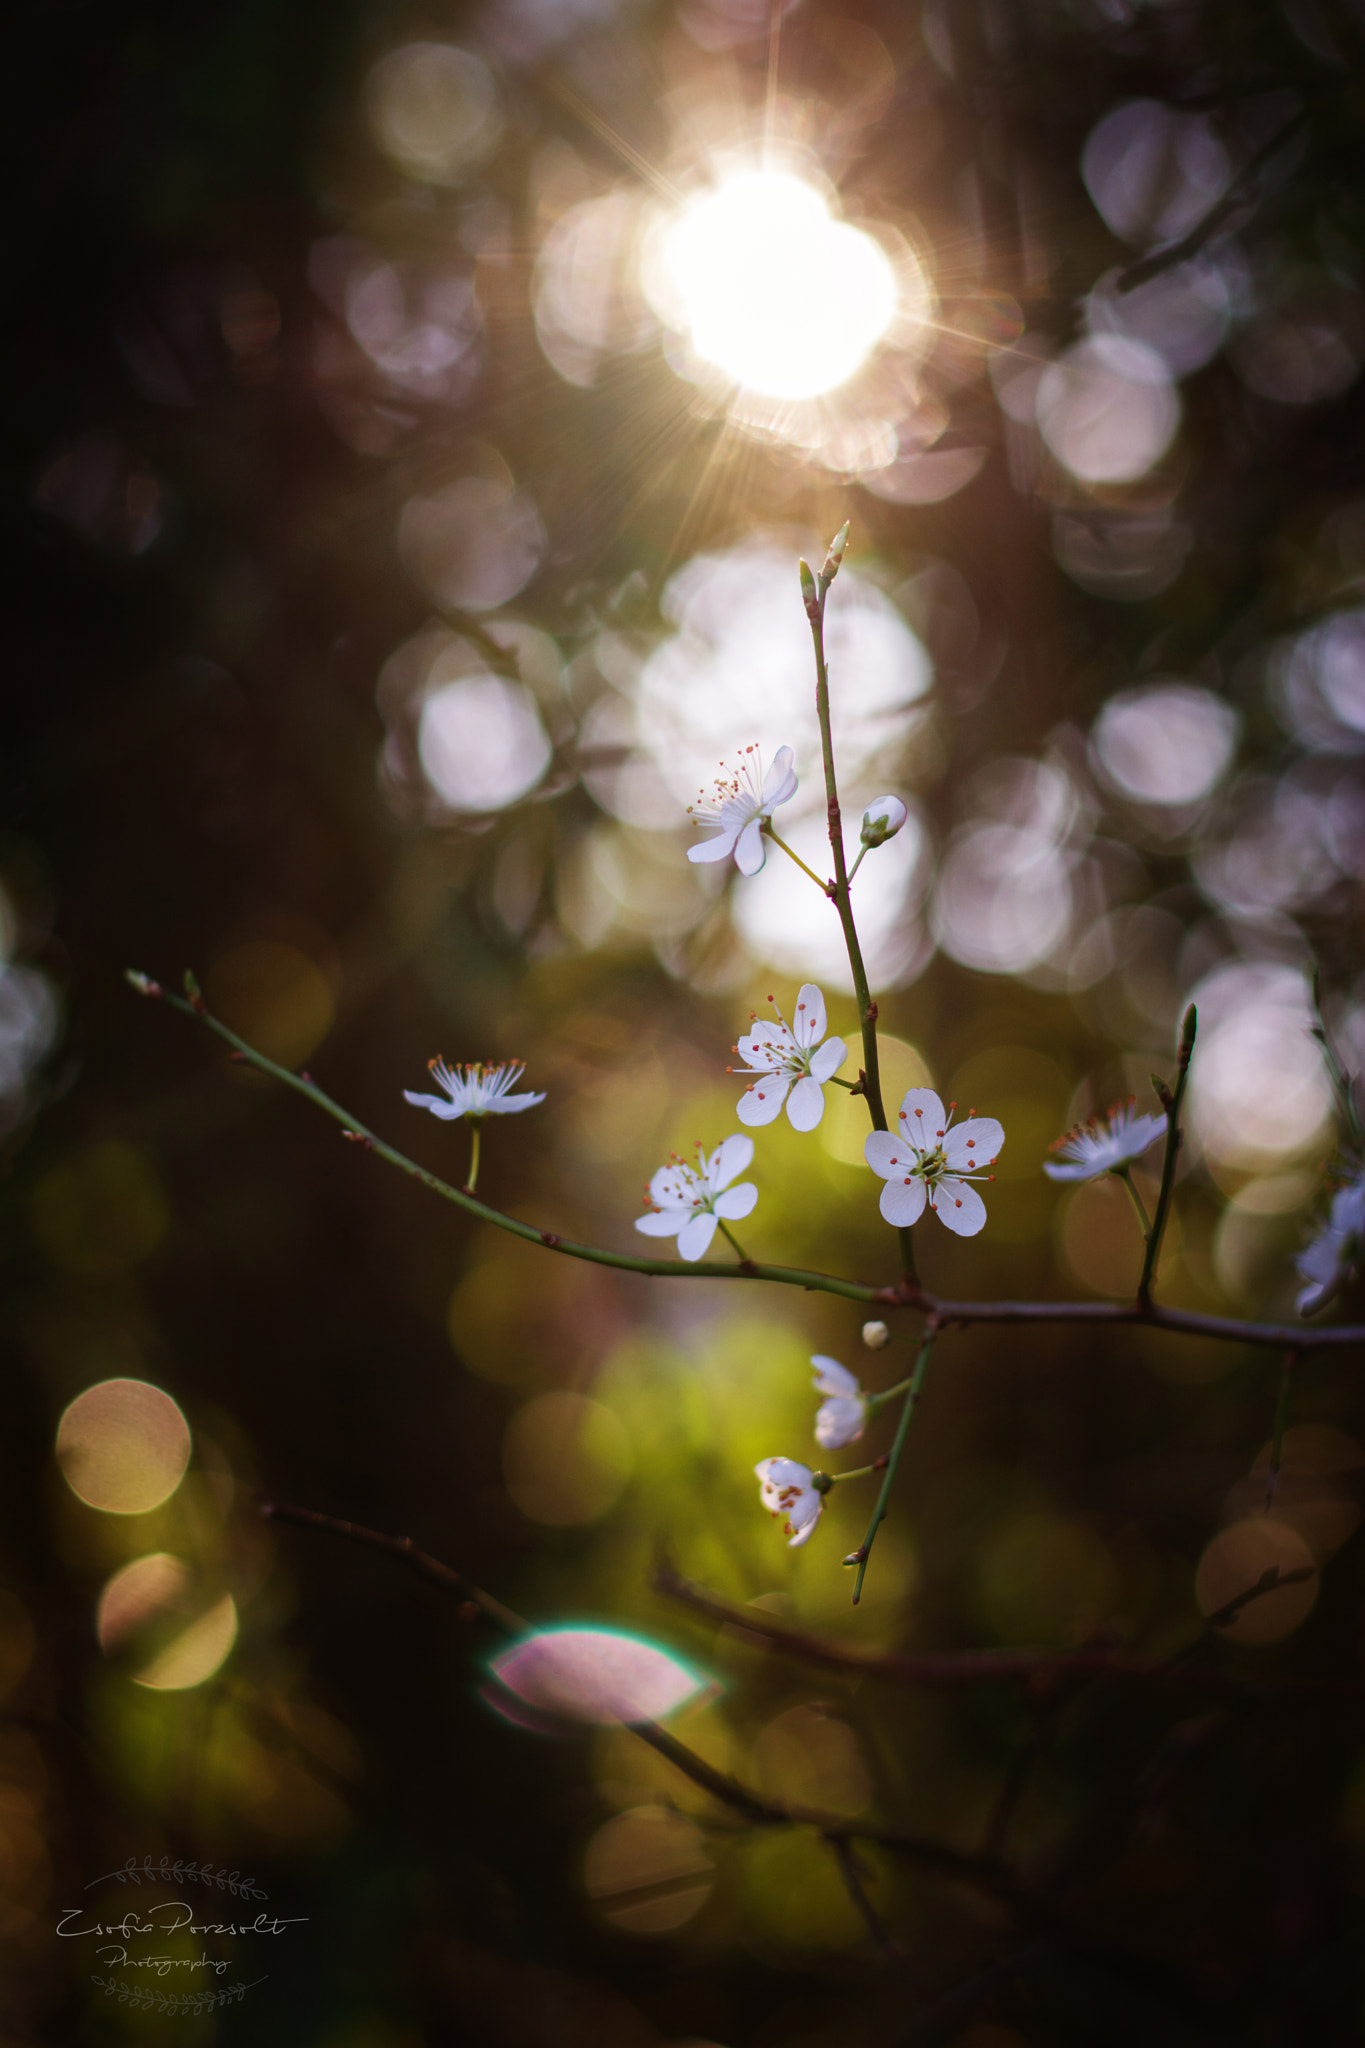 Nikon D7100 sample photo. Beautiful spring photography